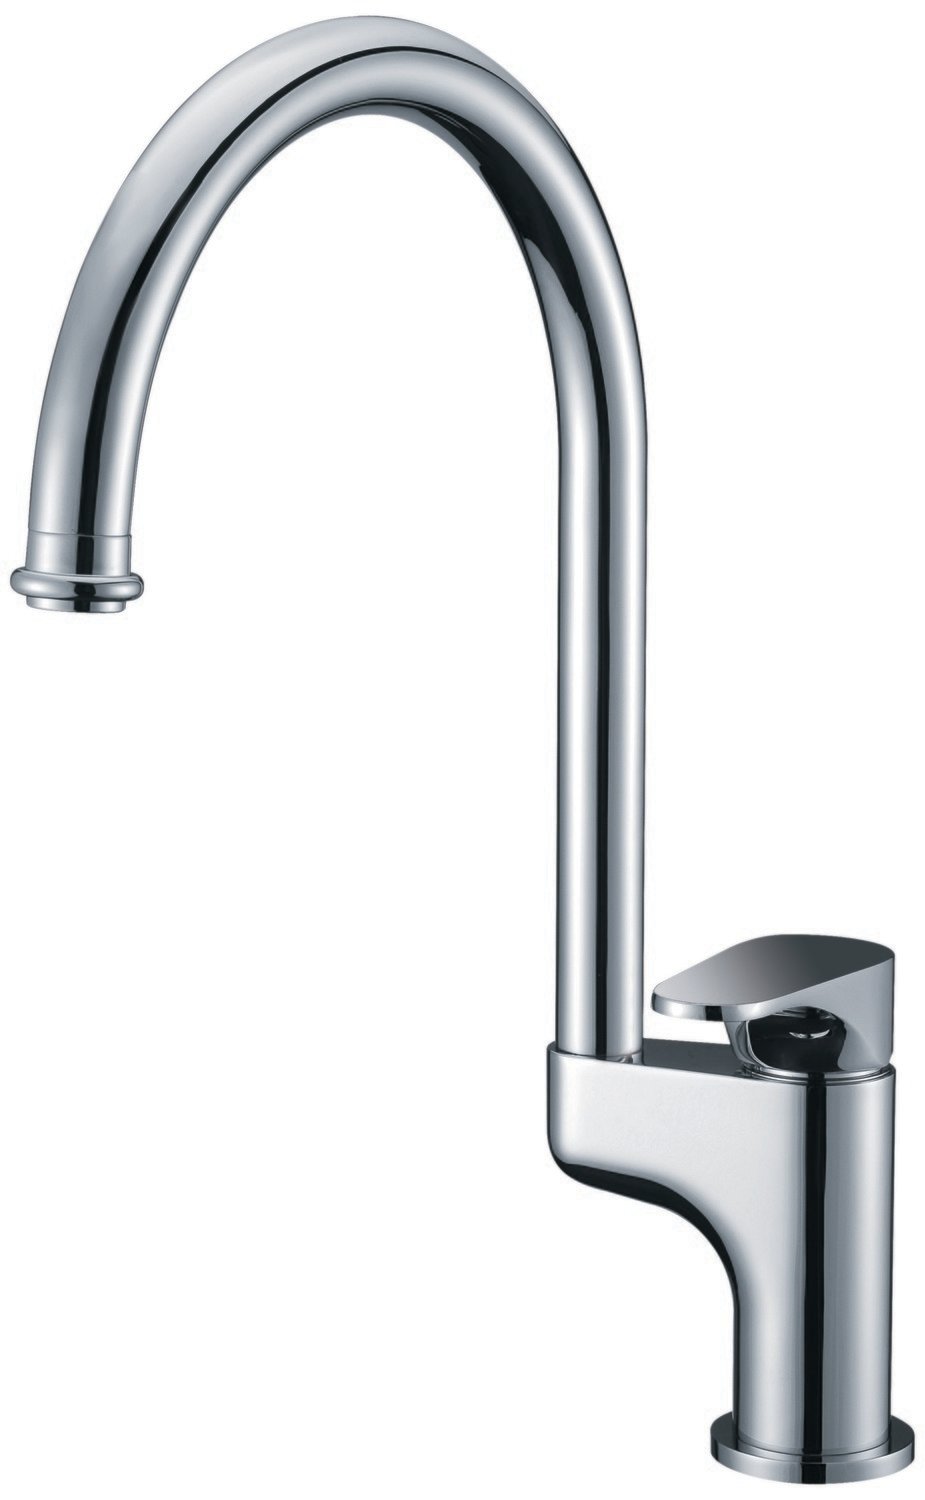 Single-lever kitchen faucet